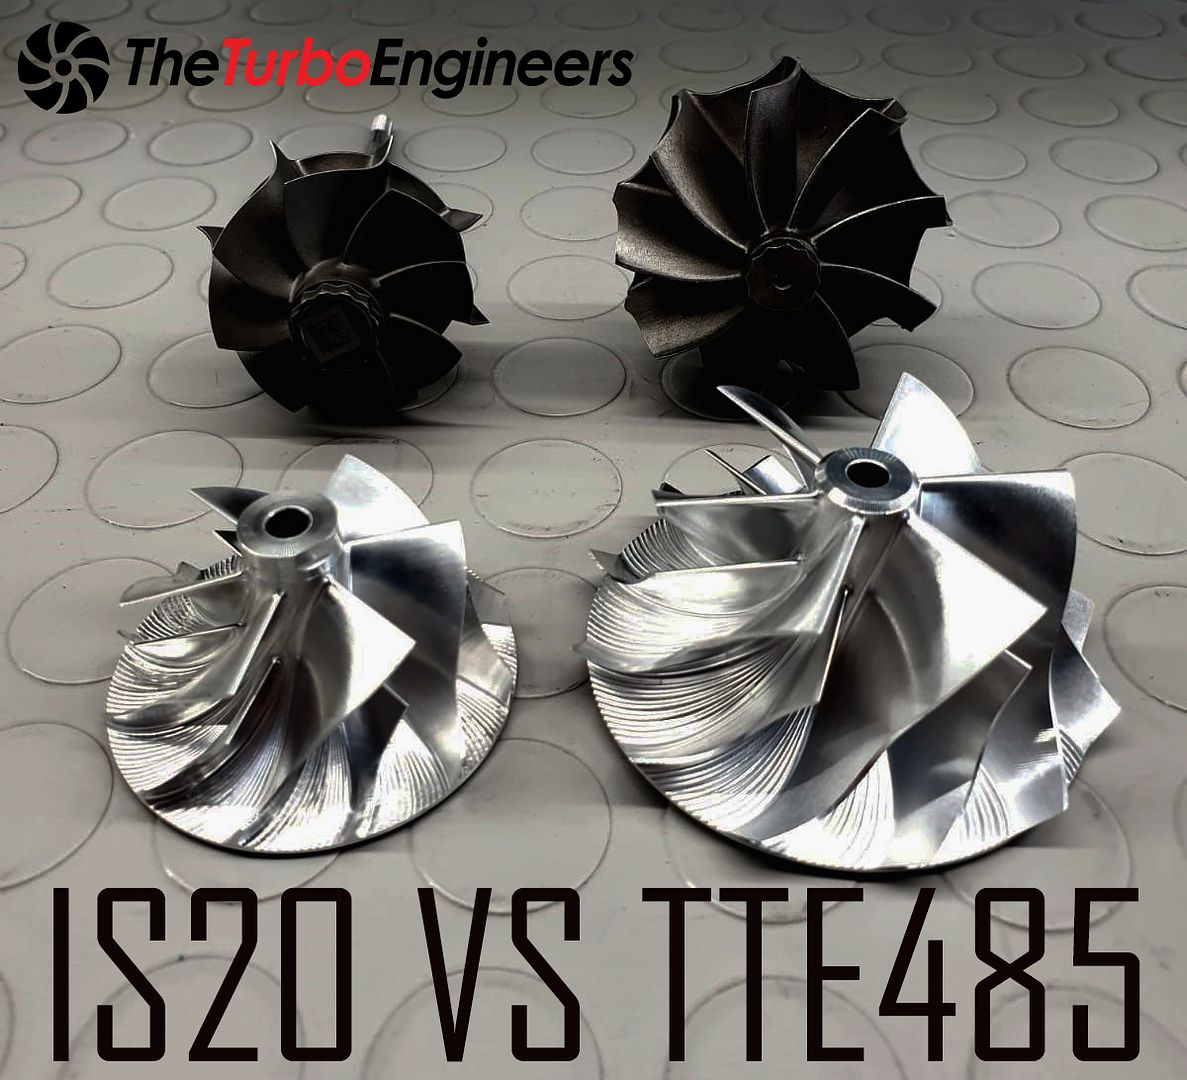  photo TTE485 vs IS20.3_zpsbps00ekp.jpg